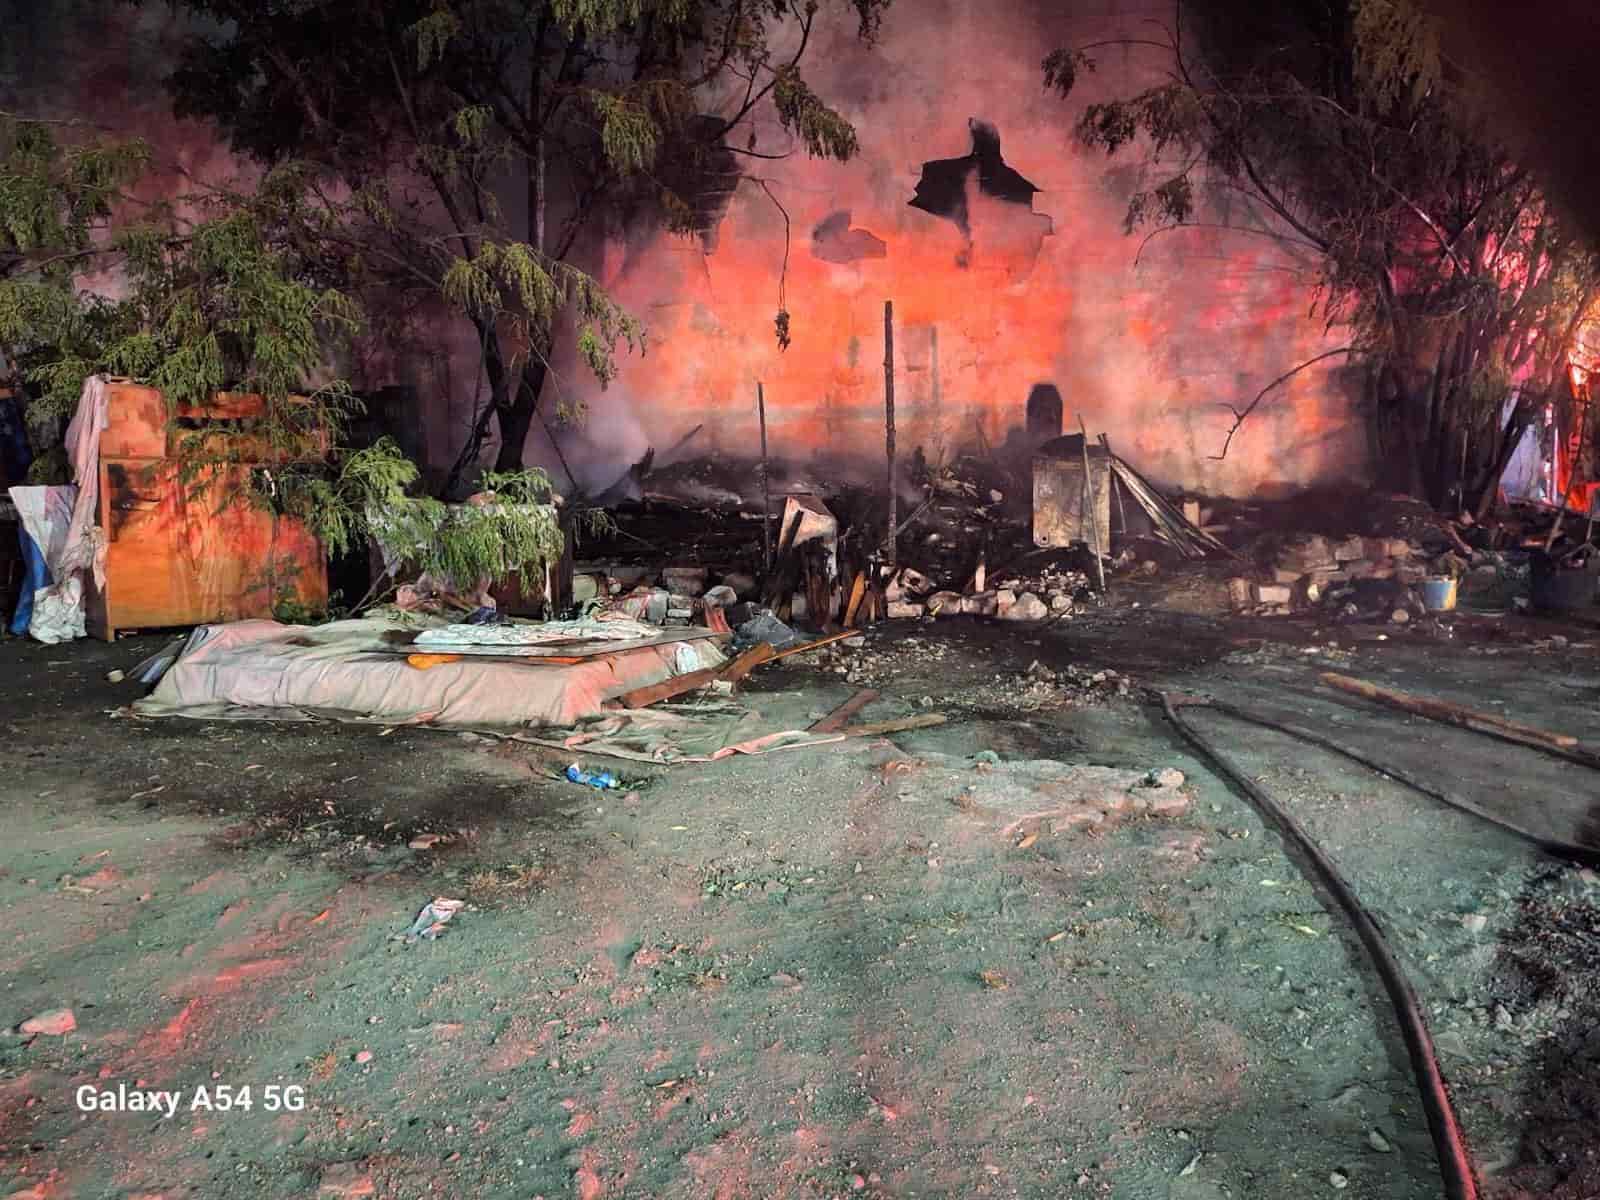 El incendio de un domicilio en la Colonia Caracol, movilizó a elementos de Bomberos de Nuevo León y Protección Civil del Estado y municipal, sin que se reportaran lesionados.